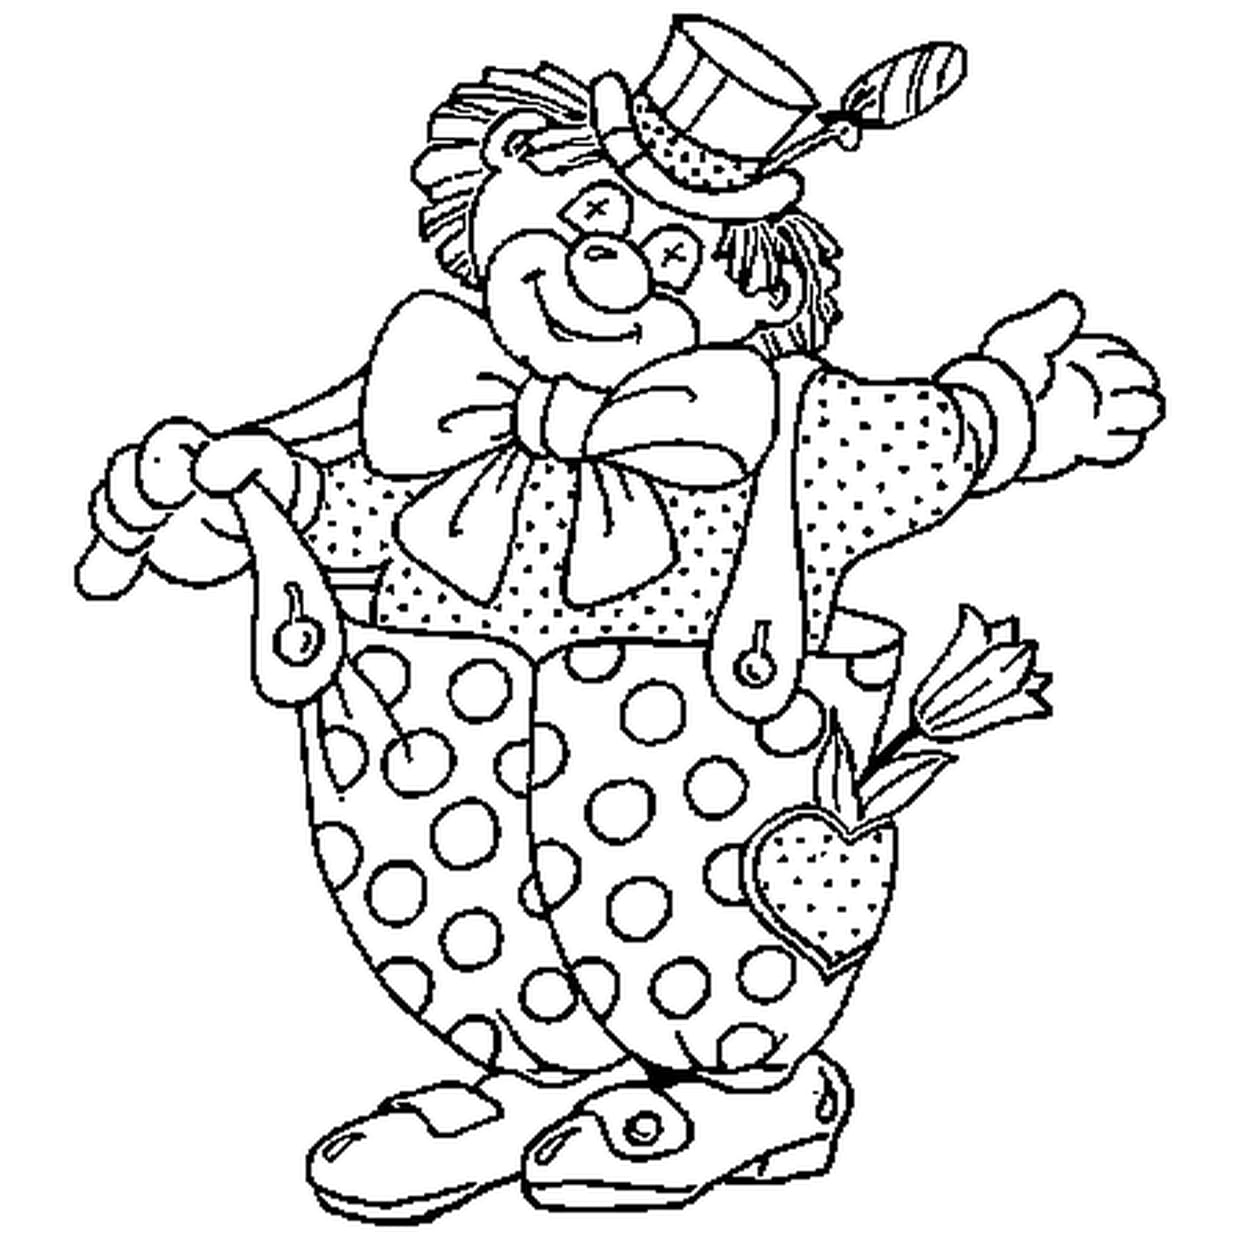 Раскраски 1 апреля день смеха для детей. Клоун раскраска. Клоун раскраска для детей. Клоун для раскрашивания детям. Веселый клоун раскраска.